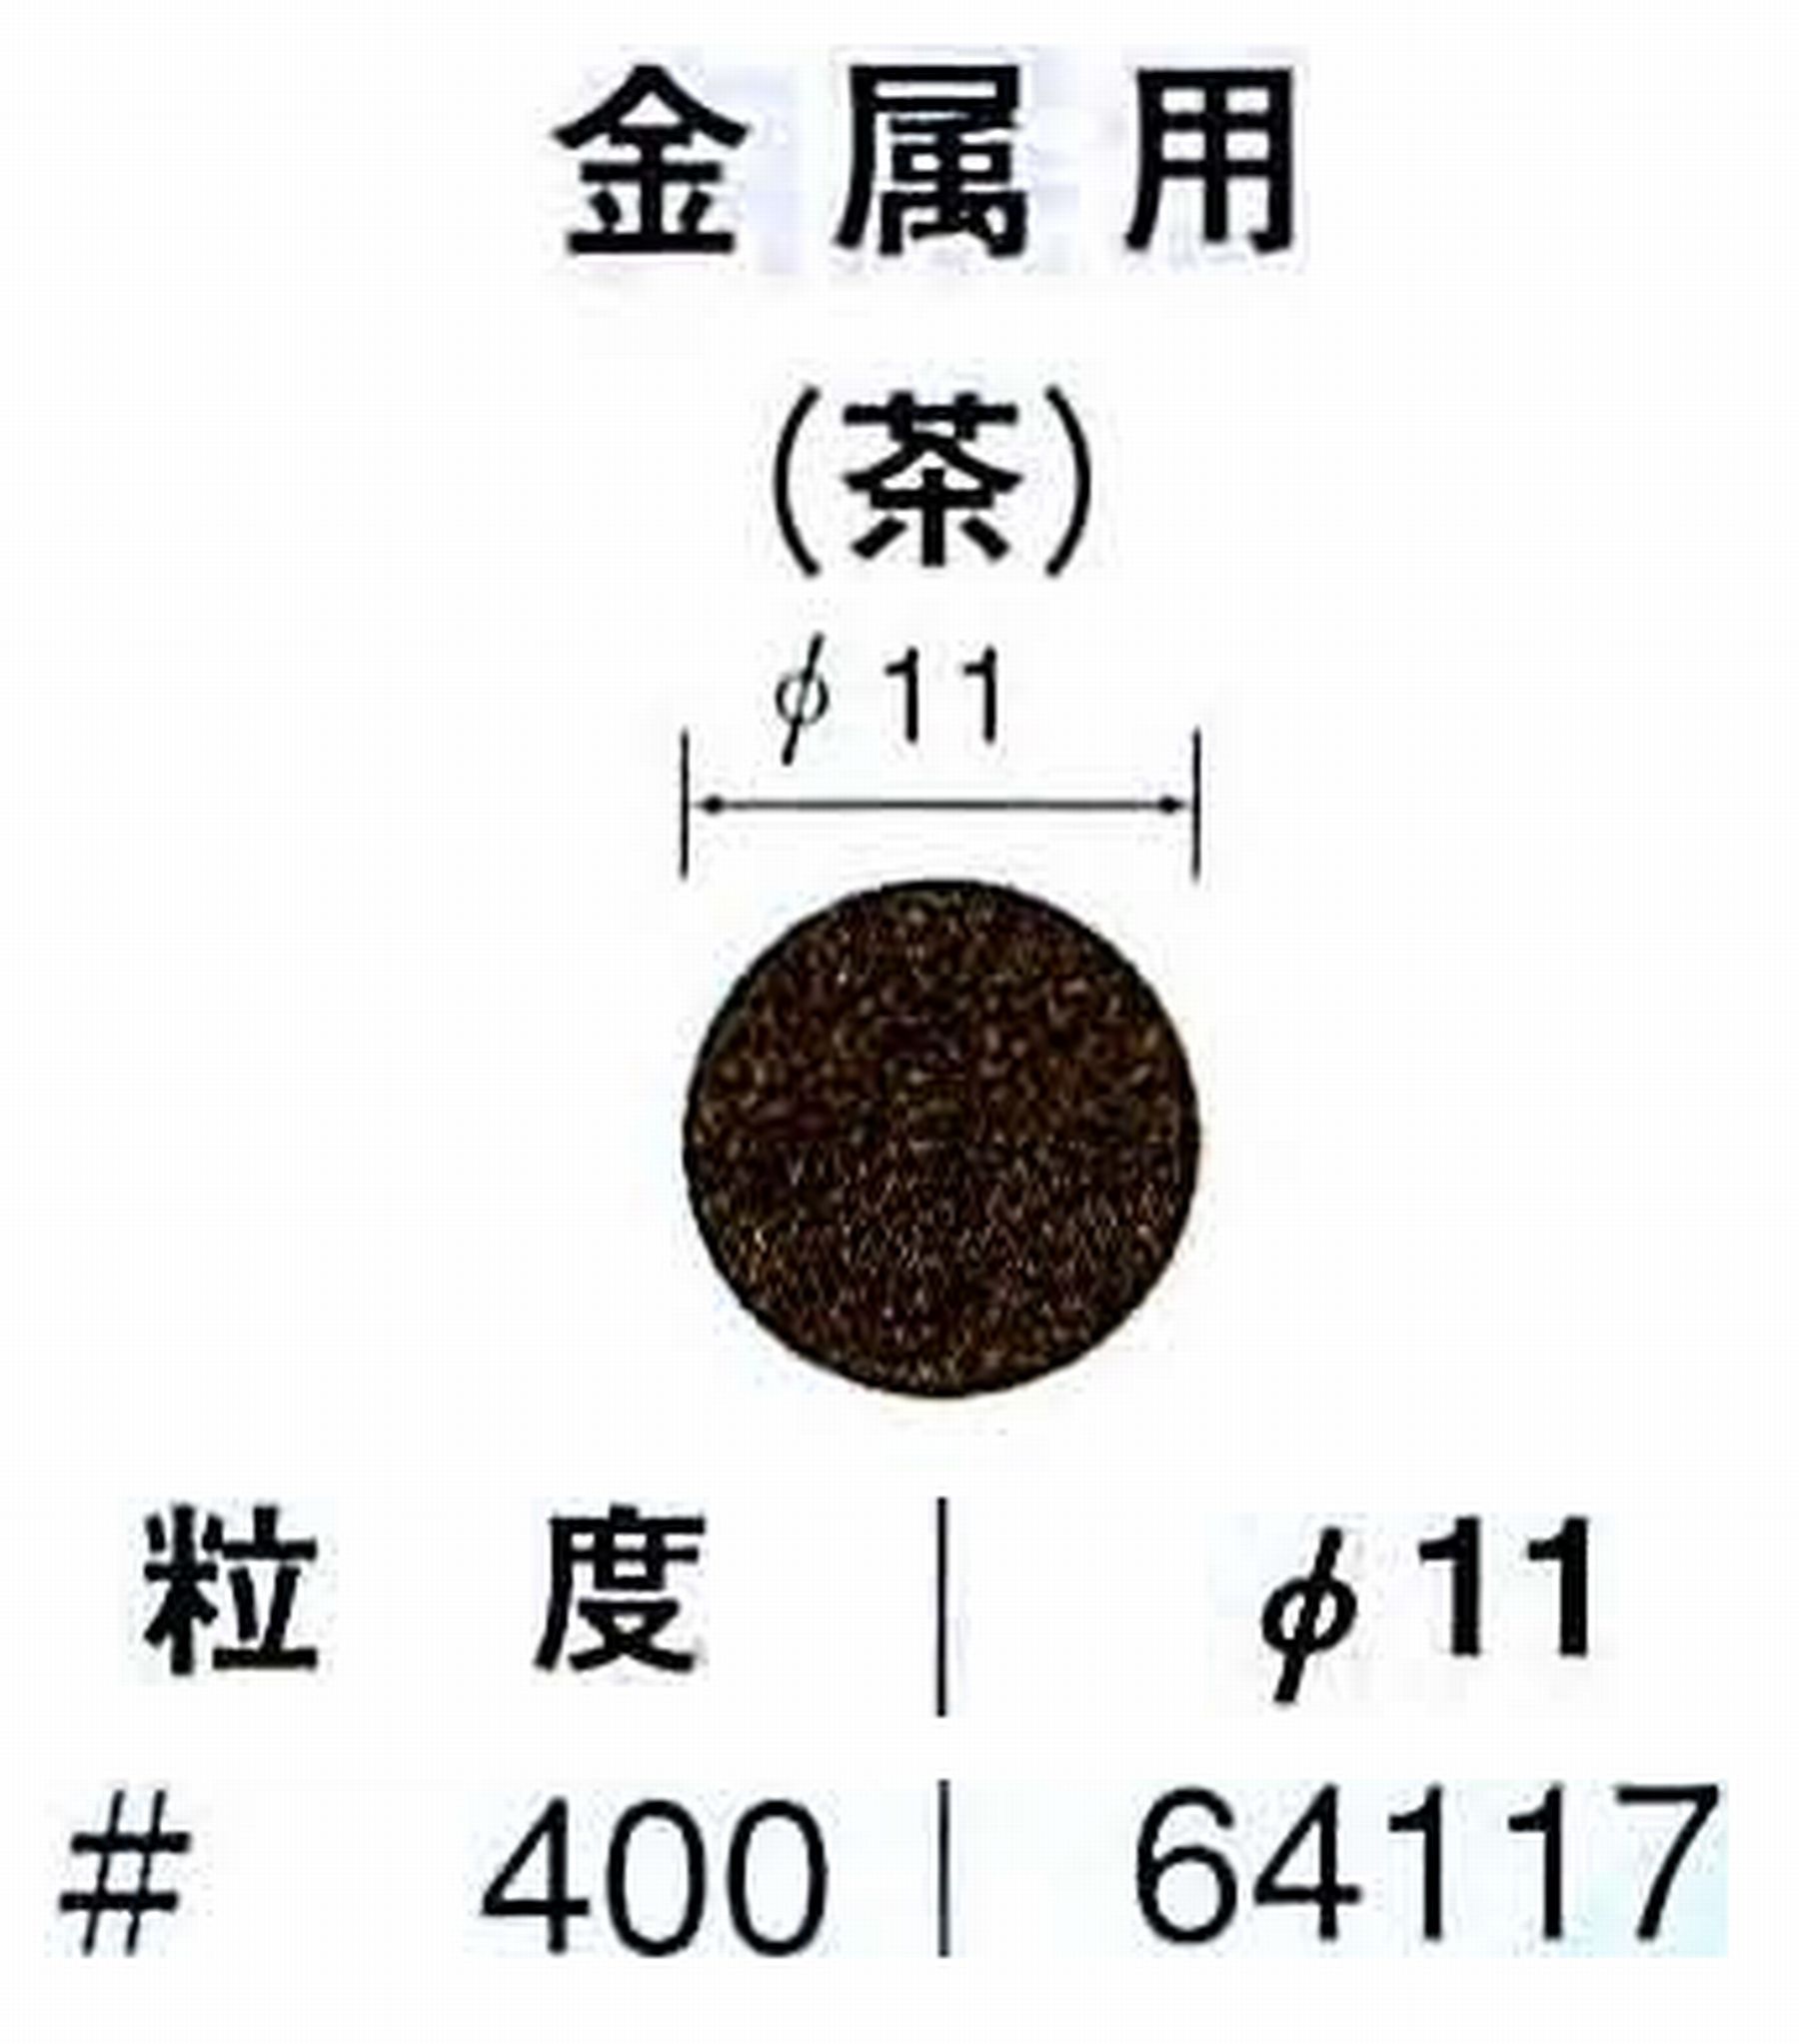 ナカニシ/NAKANISHI アングルグラインダ(電動・エアー) アングルアタッチメント専用工具 サンドペーパーディスク(布基材タイプ)裏面のり処理 64117